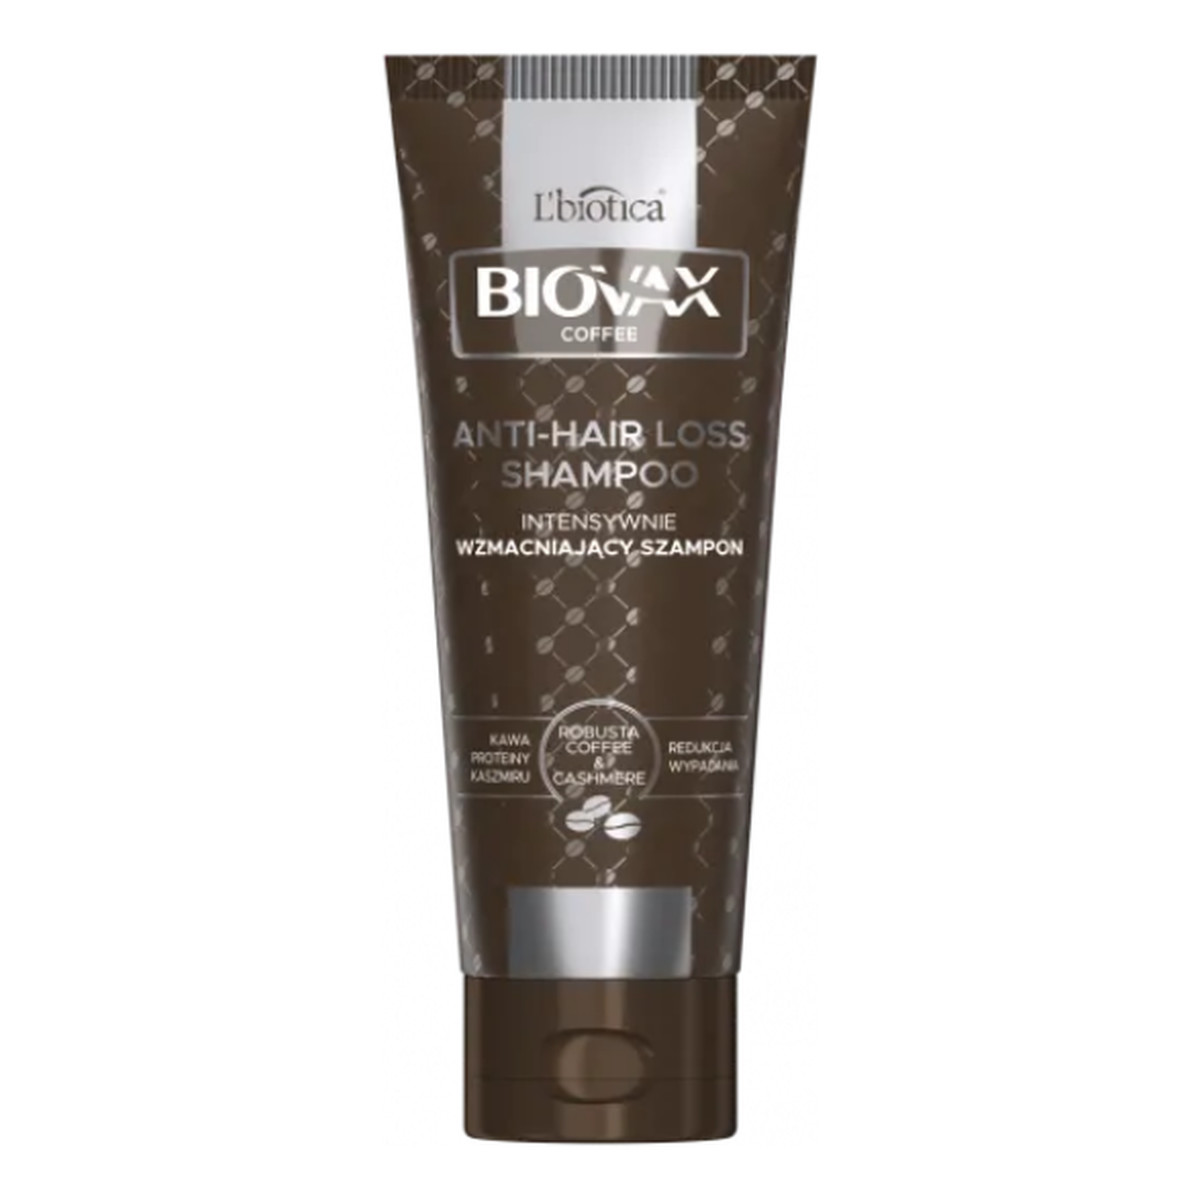 Biovax Glamour Coffee Szampon do włosów intensywnie wzmacniający - Kawa i Proteiny Kaszmiru 200ml